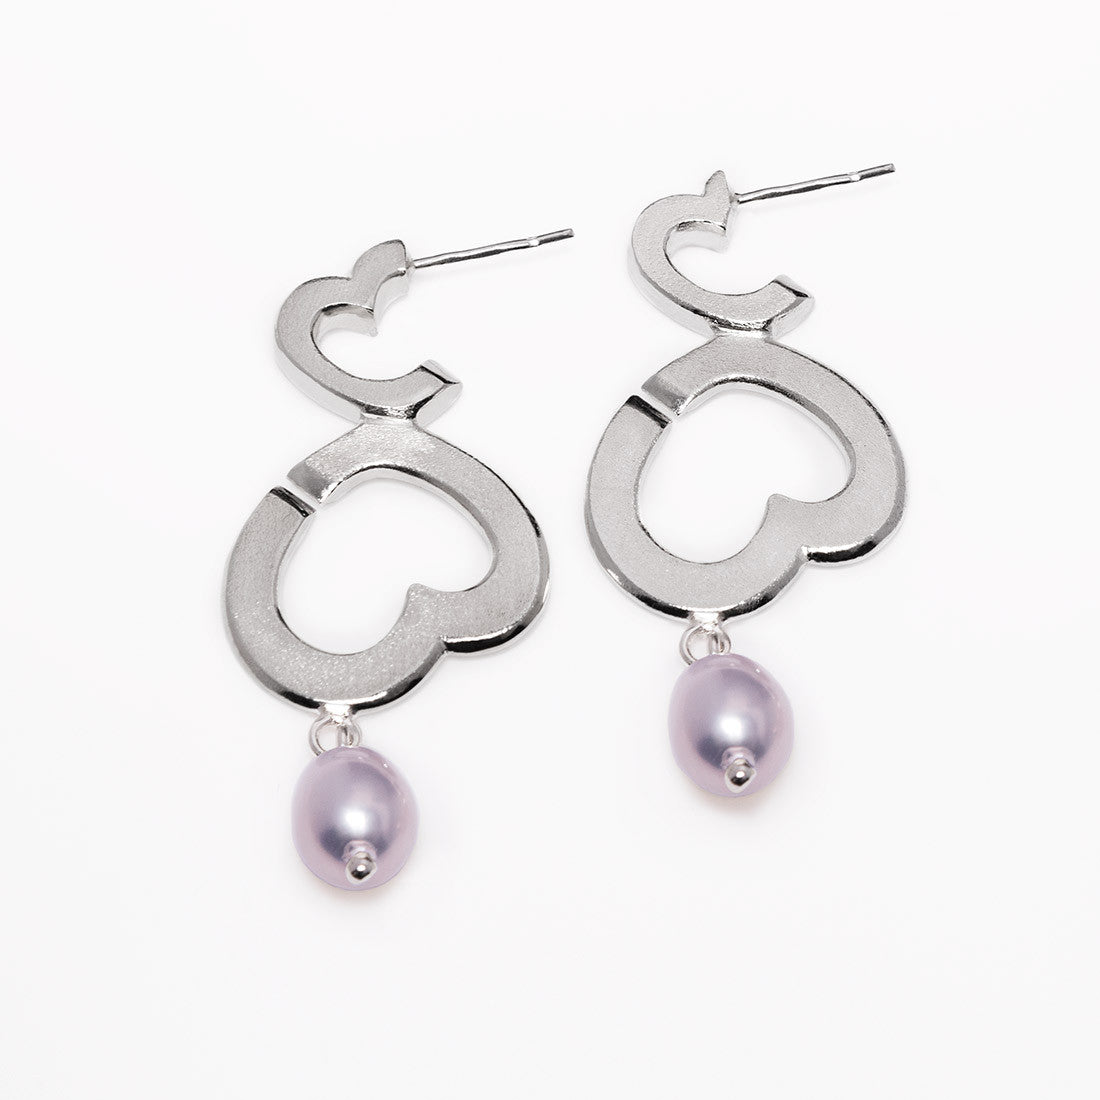 Bubblelove earrings with pearl